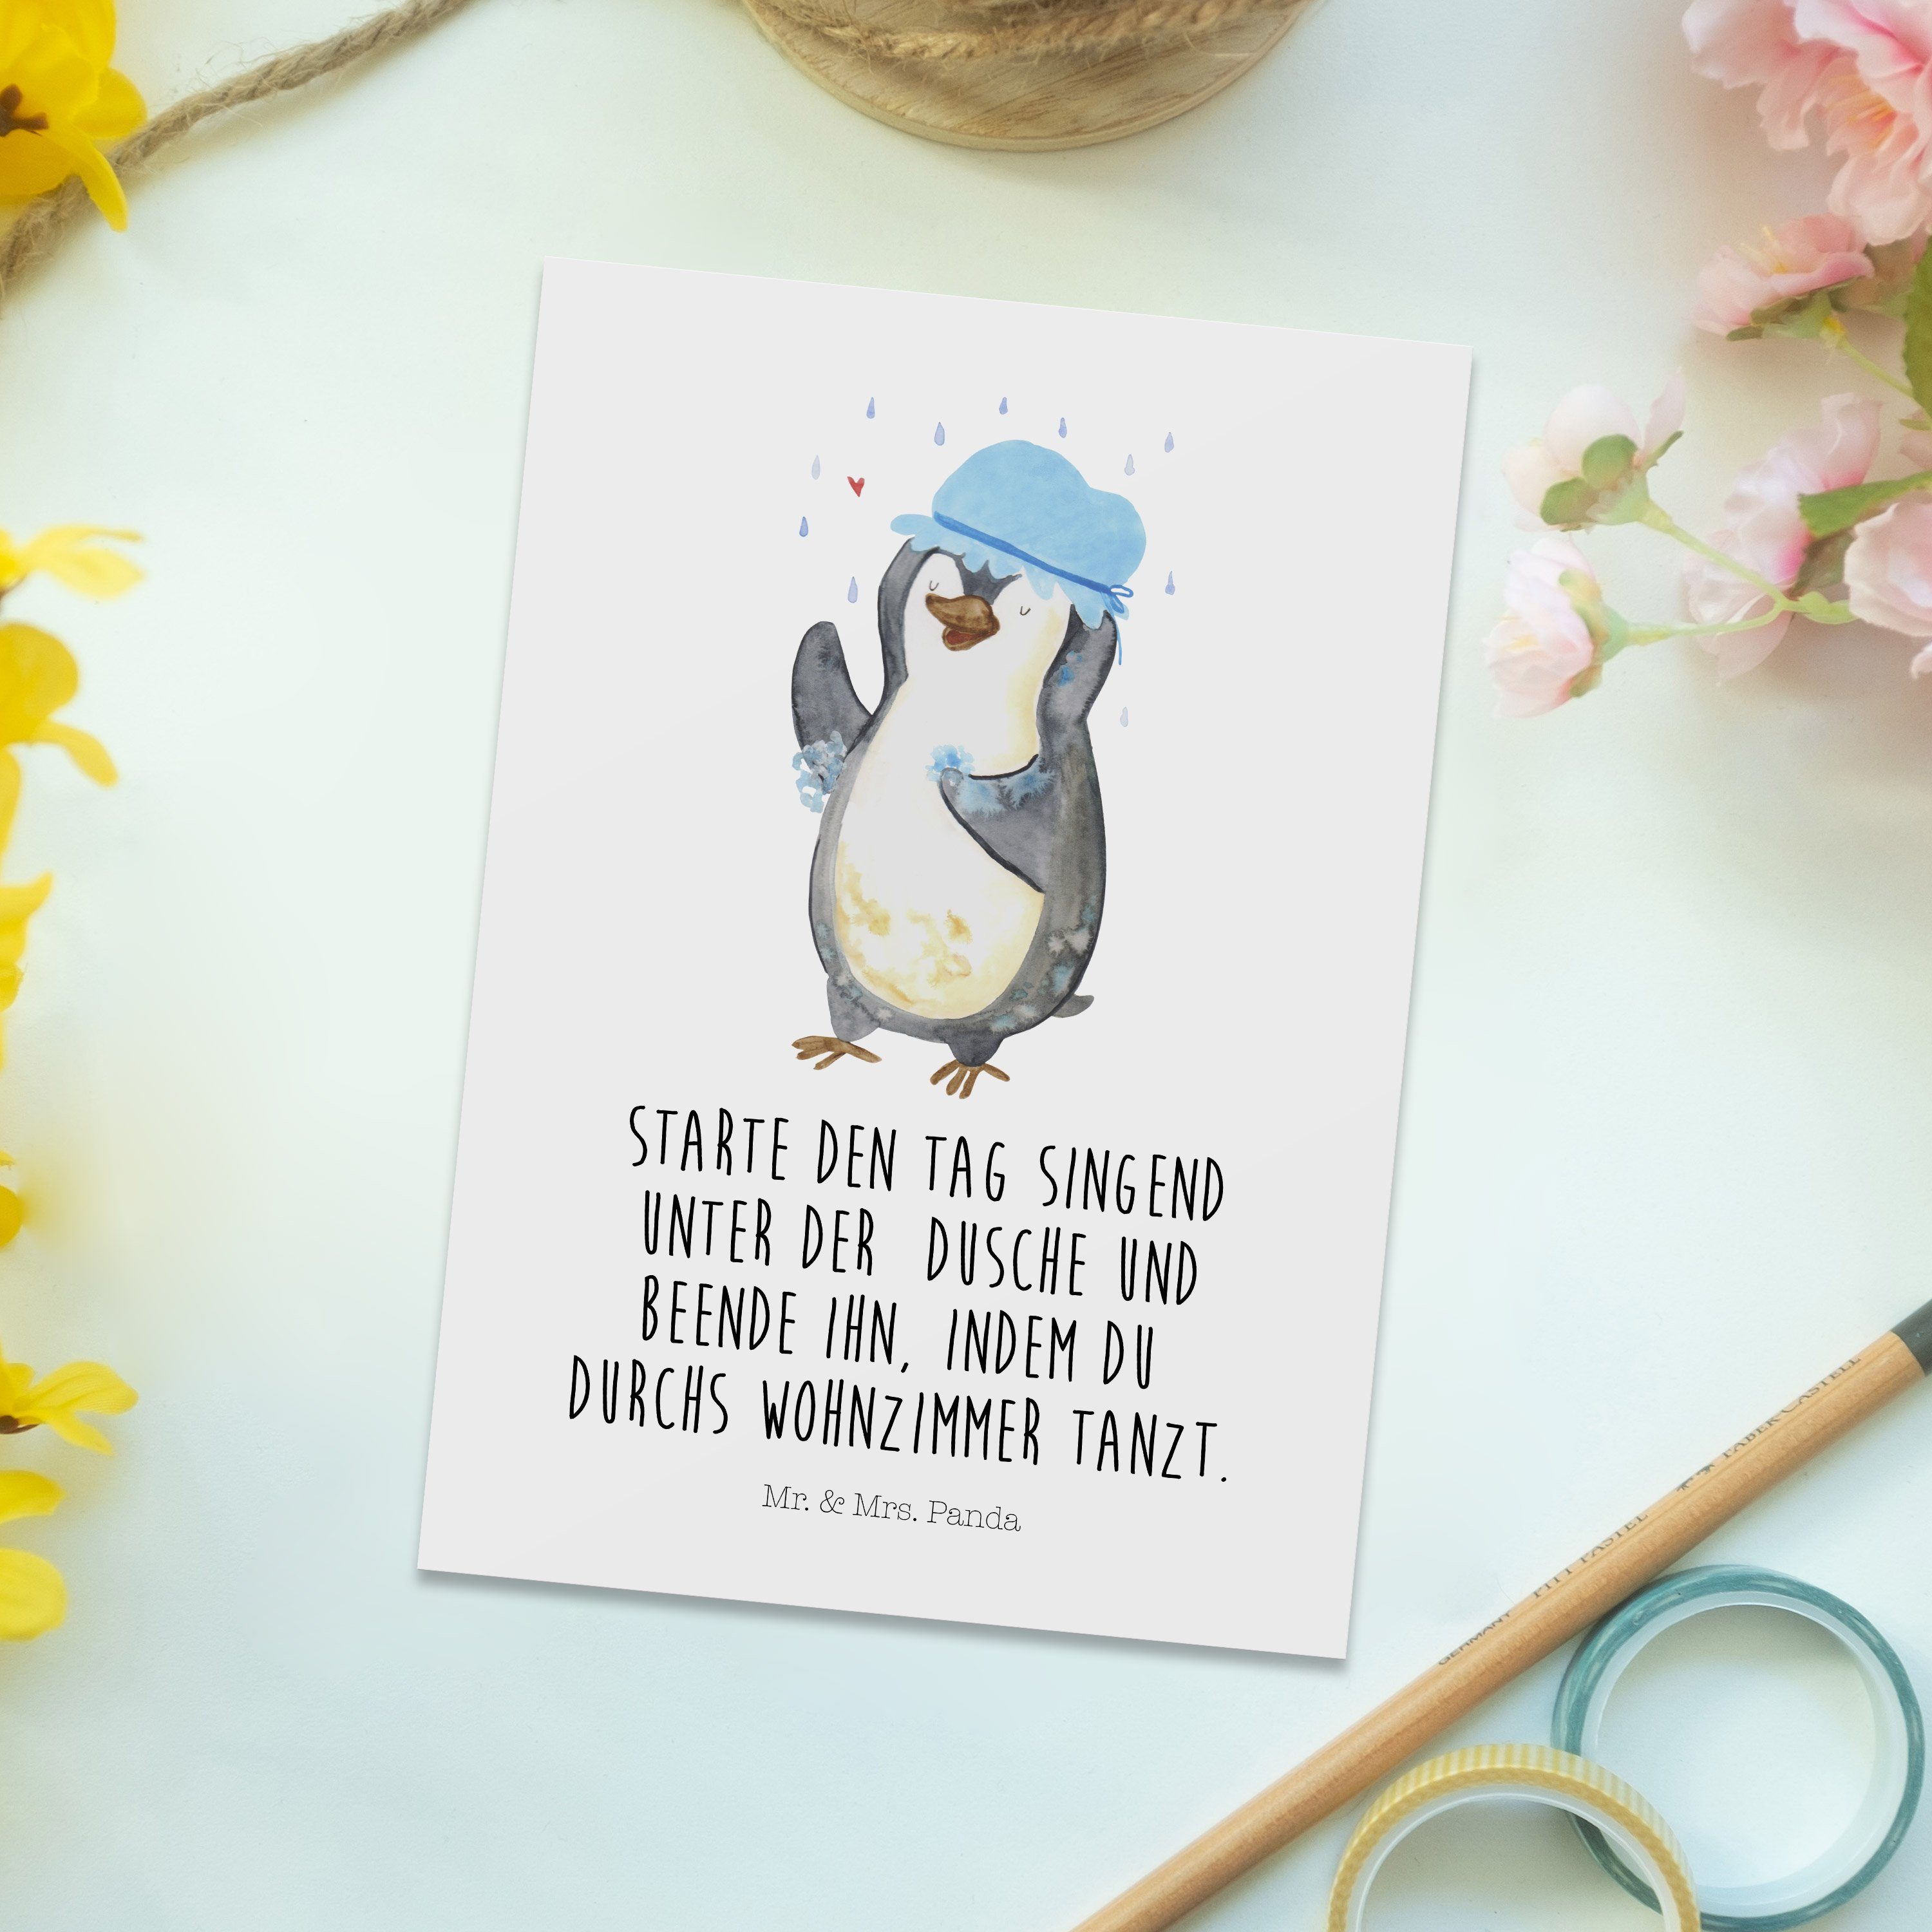 Mr. & Mrs. Panda Motivation, Pinguin - duscht G duschen, Geschenk, Lebensmotto, - Postkarte Weiß